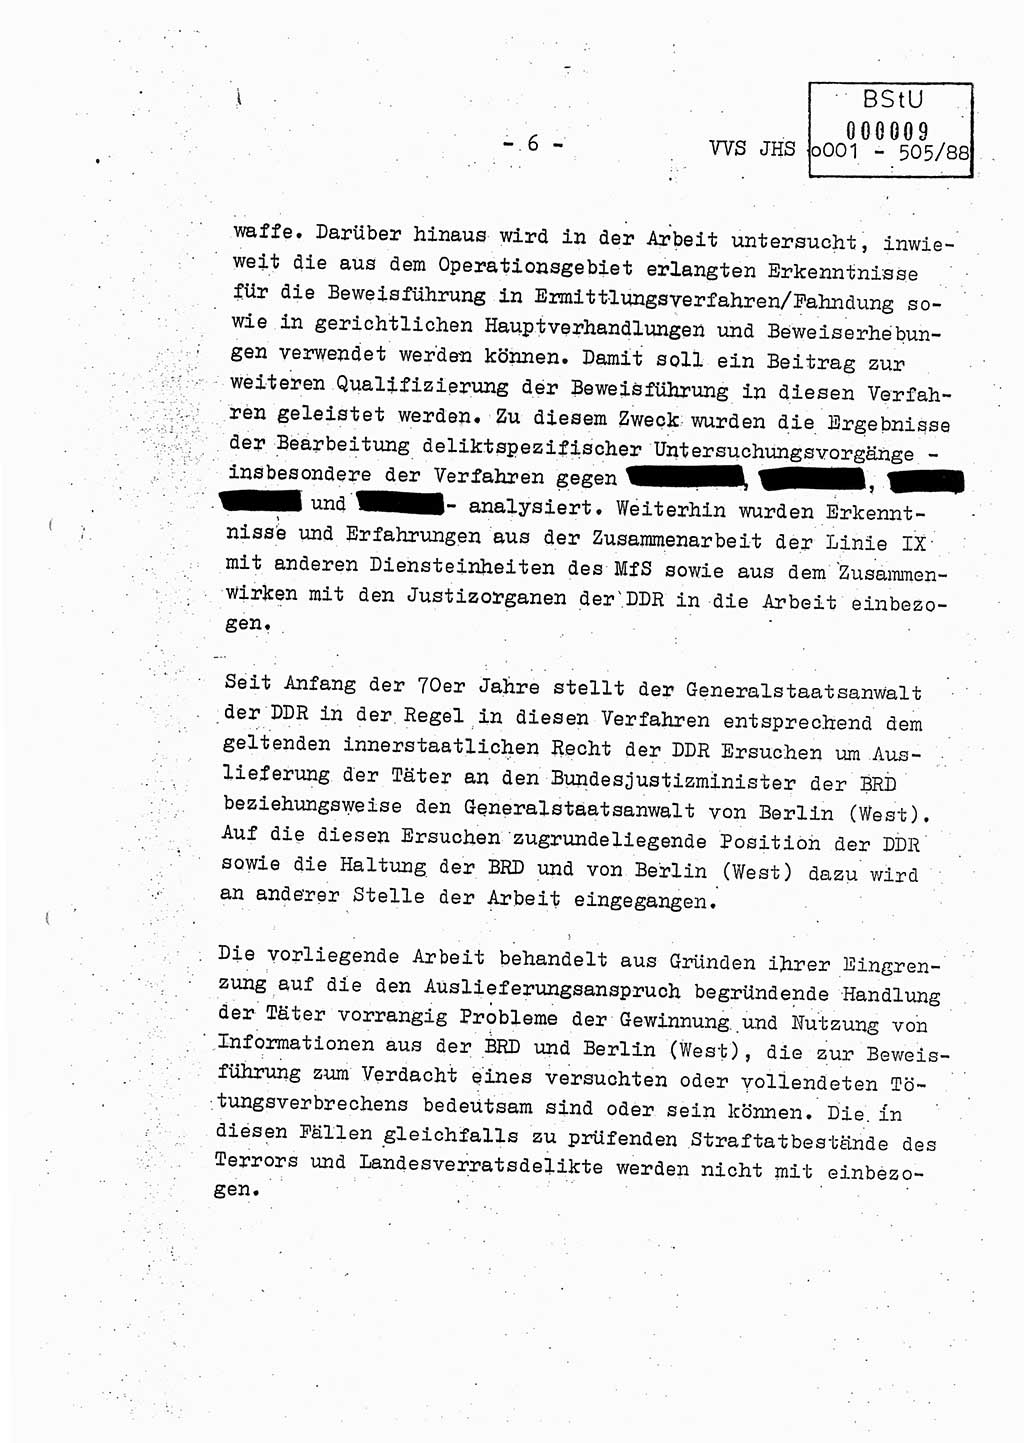 Diplomarbeit Leutnant Frank Schulze (HA Ⅸ/9), Ministerium für Staatssicherheit (MfS) [Deutsche Demokratische Republik (DDR)], Juristische Hochschule (JHS), Vertrauliche Verschlußsache (VVS) o001-505/88, Potsdam 1988, Seite 6 (Dipl.-Arb. MfS DDR JHS VVS o001-505/88 1988, S. 6)